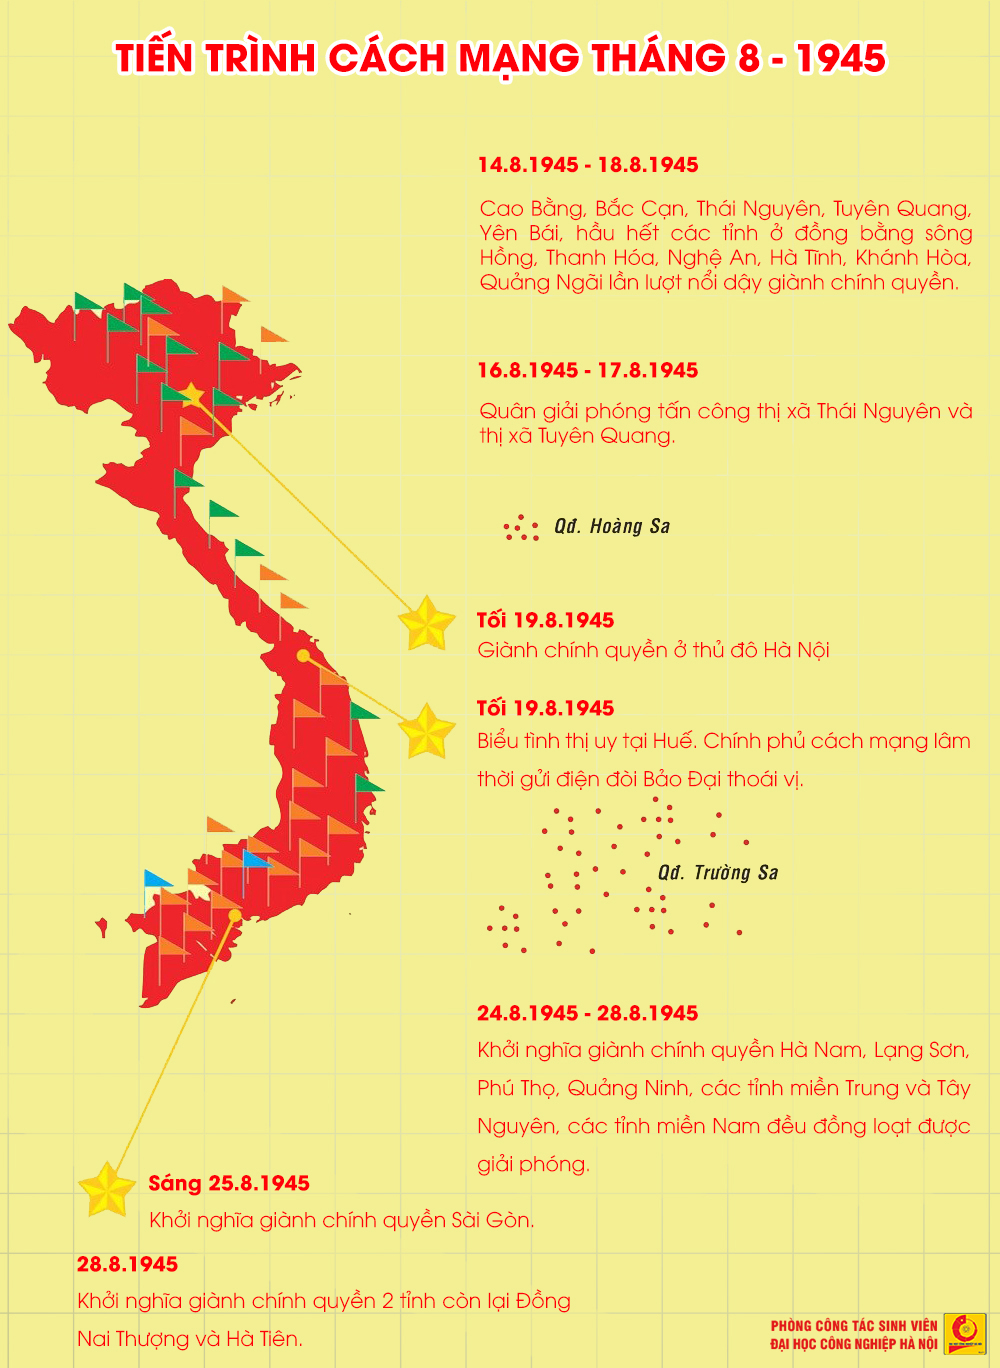 Ngày 02/9/1945: Mốc son chói lọi của dân tộc Việt Nam